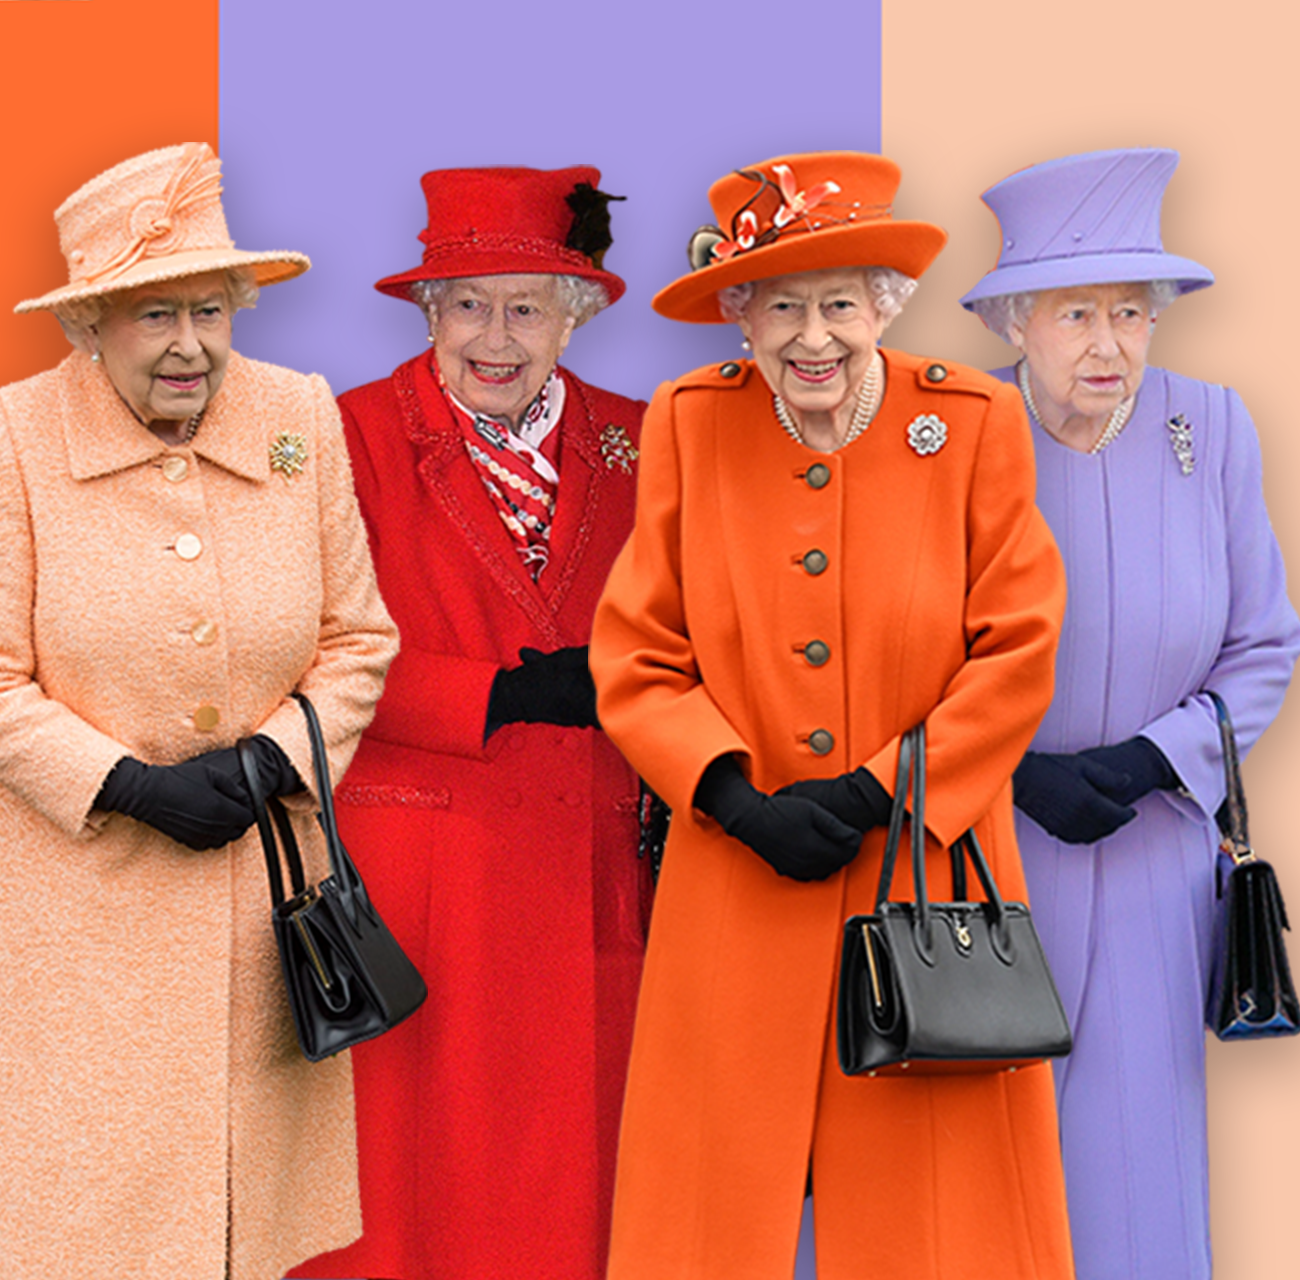 الملكة في أزياء ملونة مختلفة وحقيبة يد